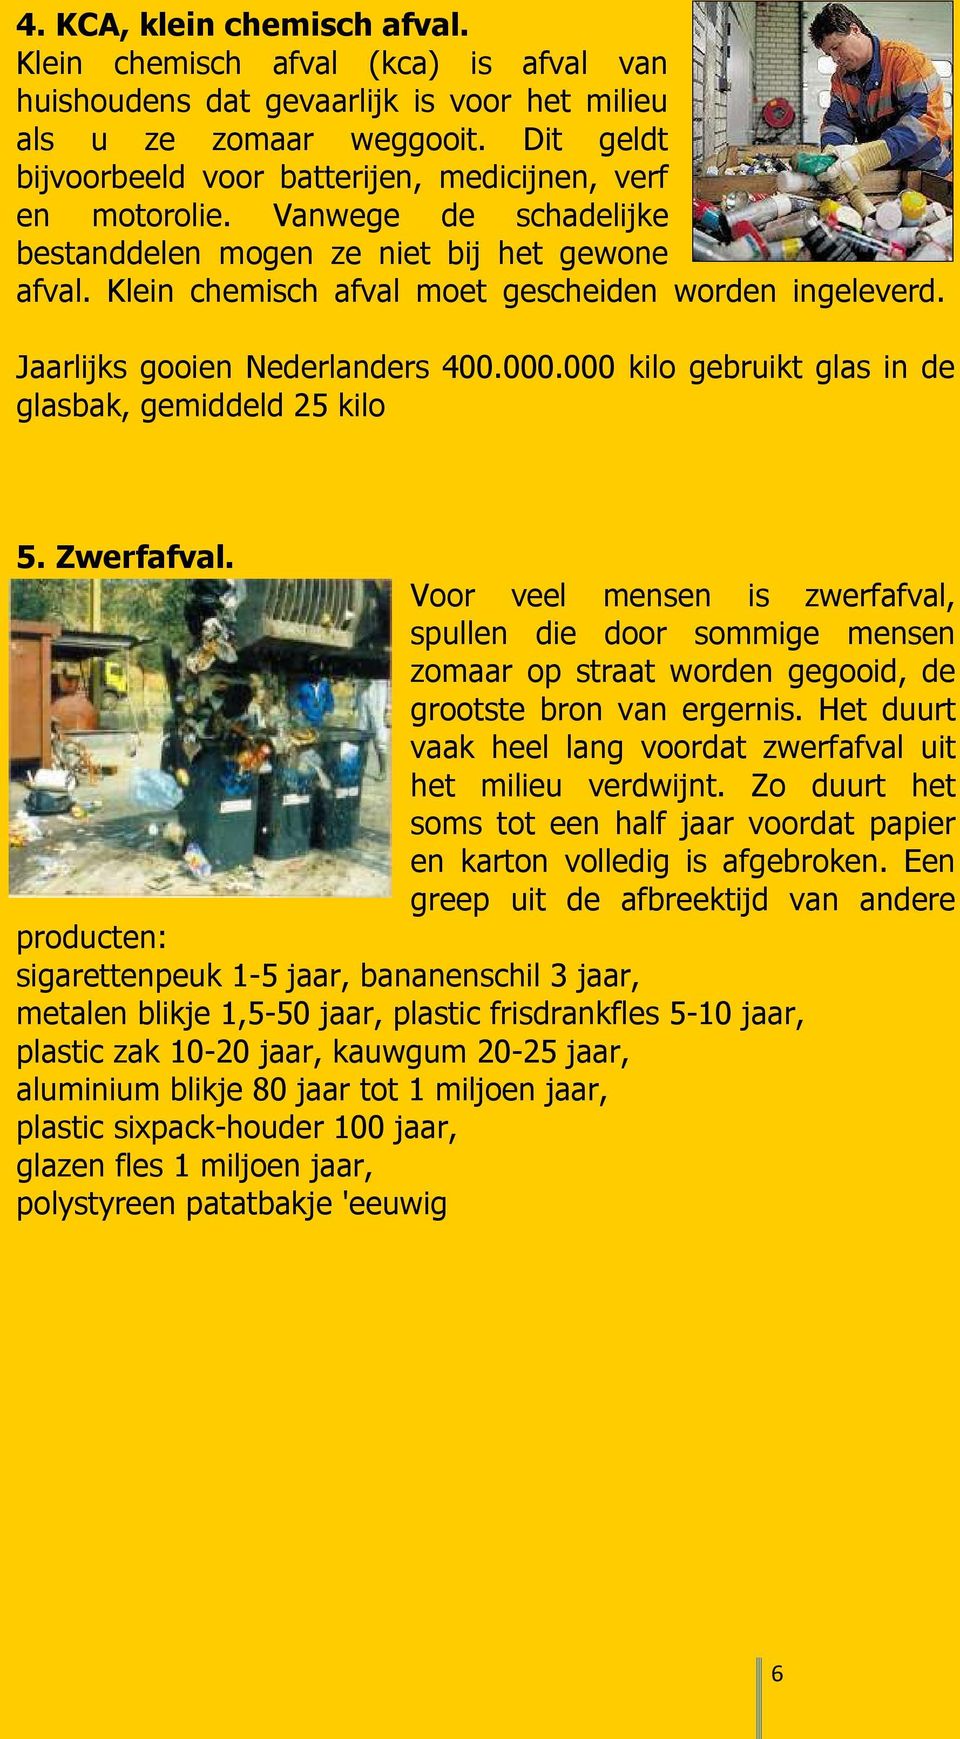 Jaarlijks gooien Nederlanders 400.000.000 kilo gebruikt glas in de glasbak, gemiddeld 25 kilo 5. Zwerfafval.